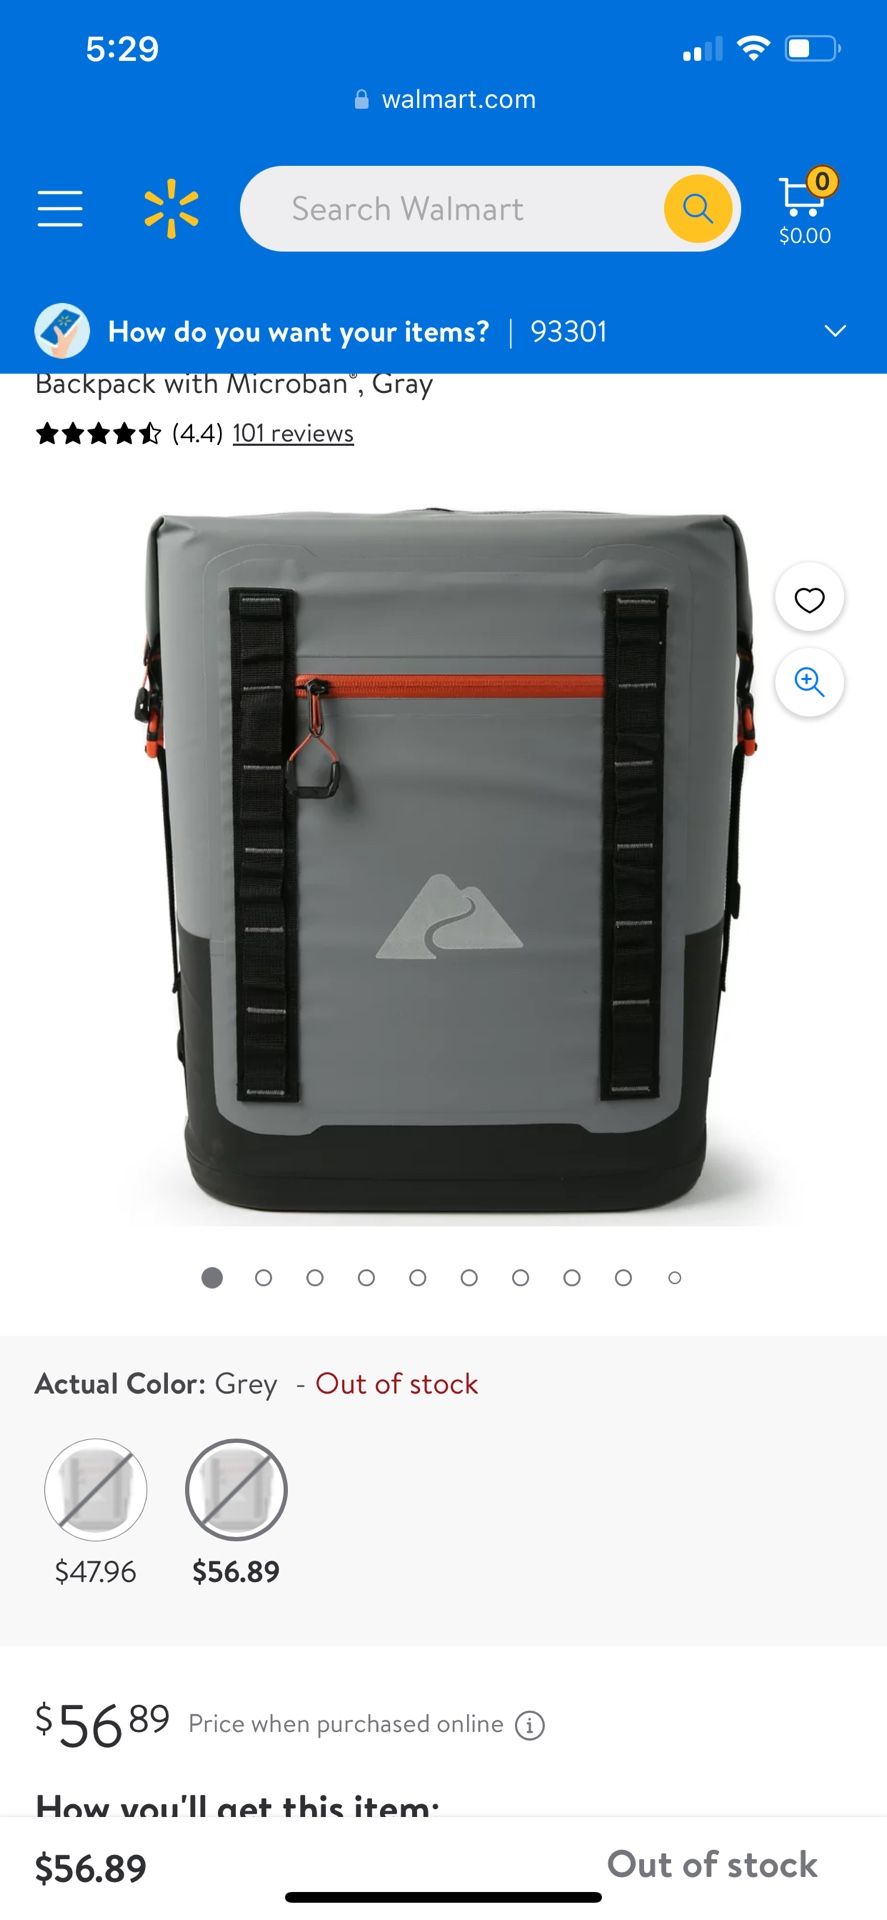 Backpack Cooler